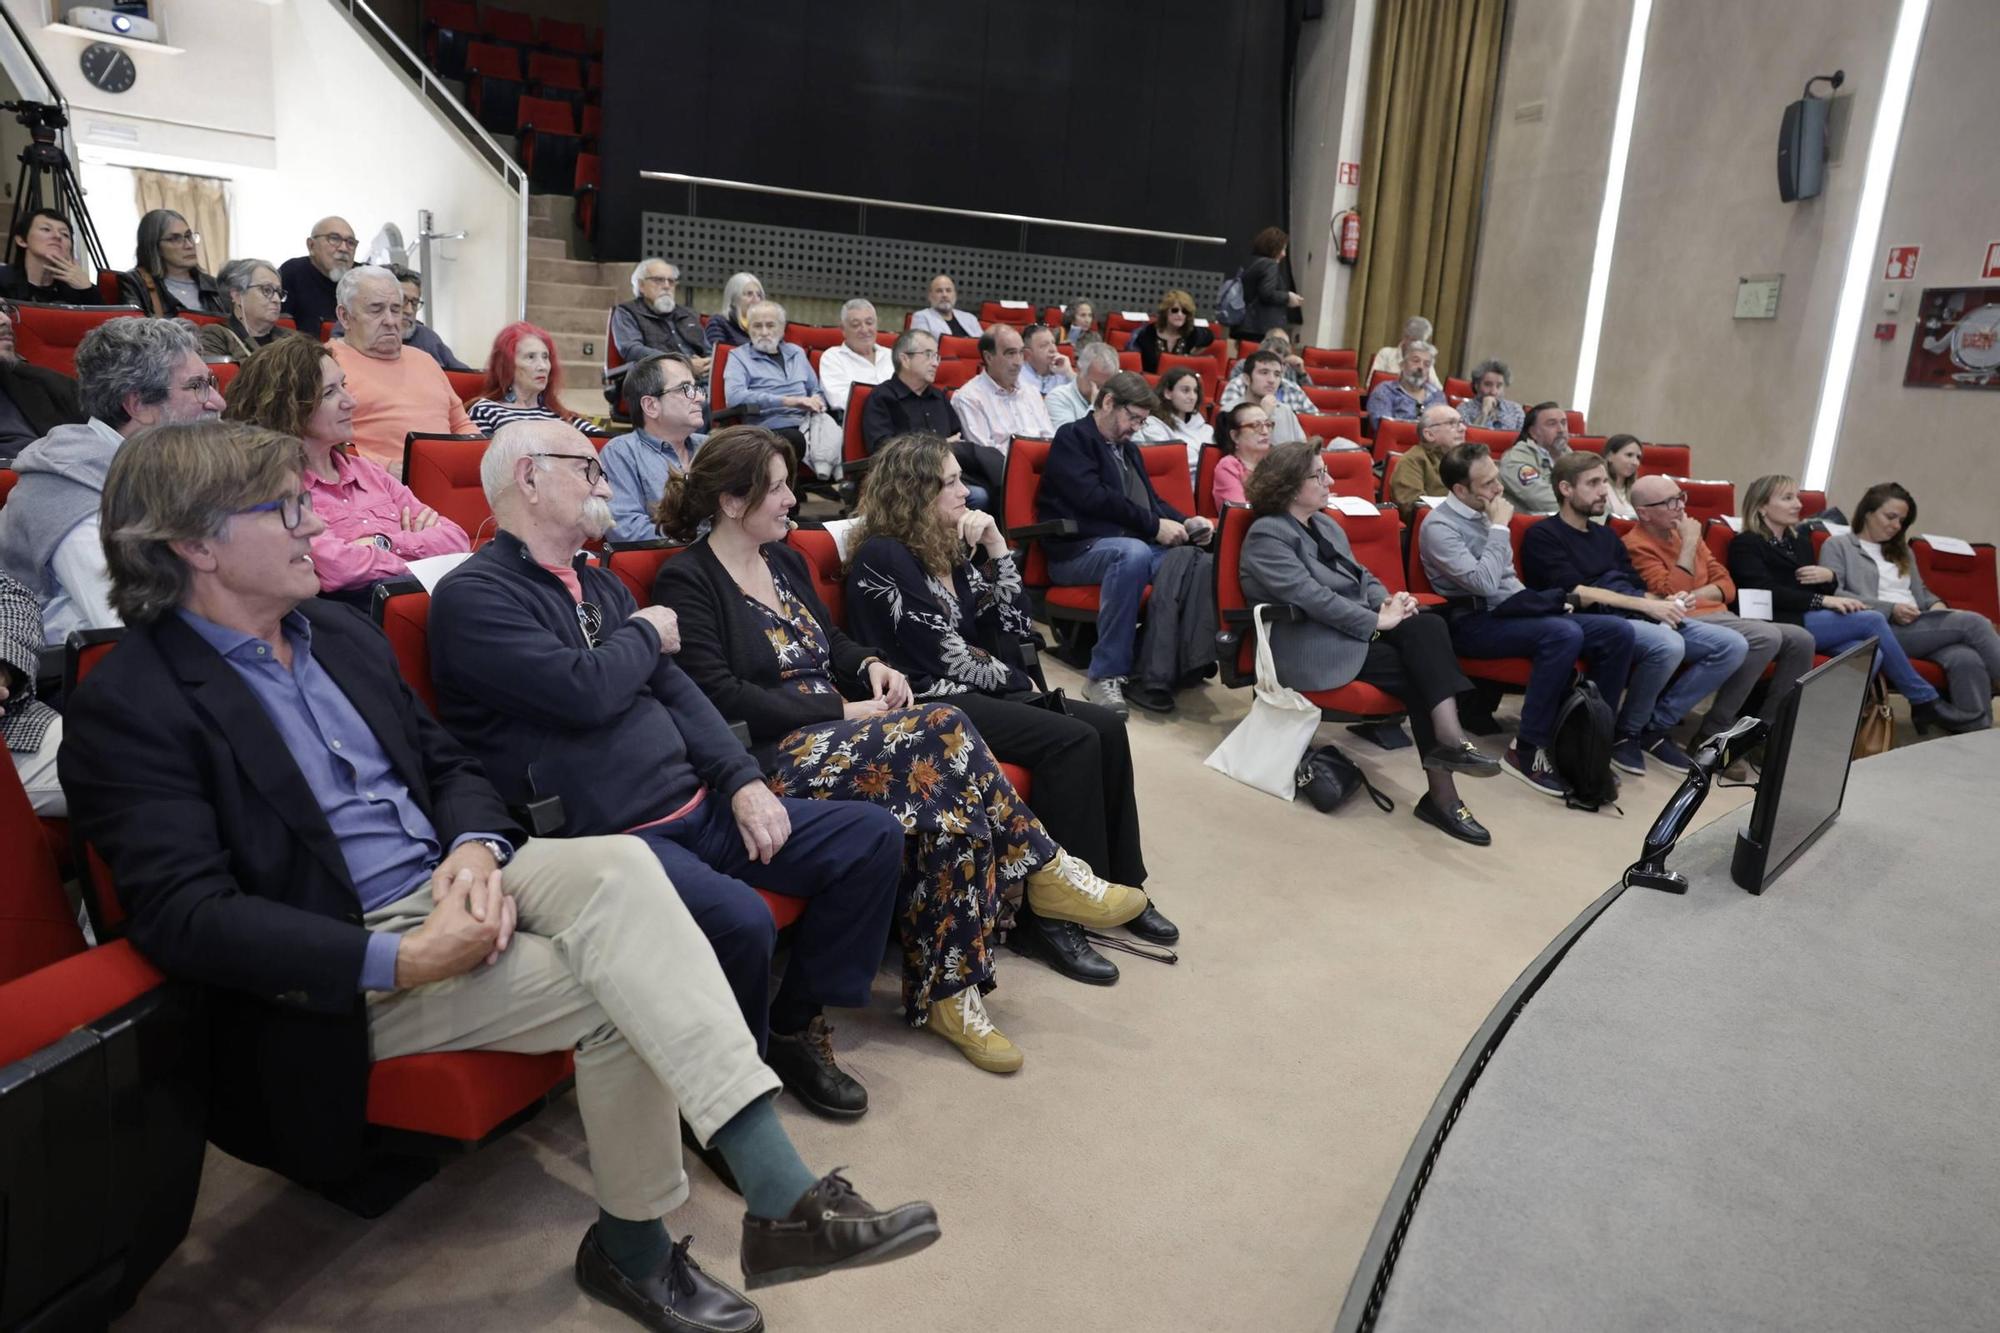 Preestreno del documental sobre Torrelló en el Club Diario de Mallorca